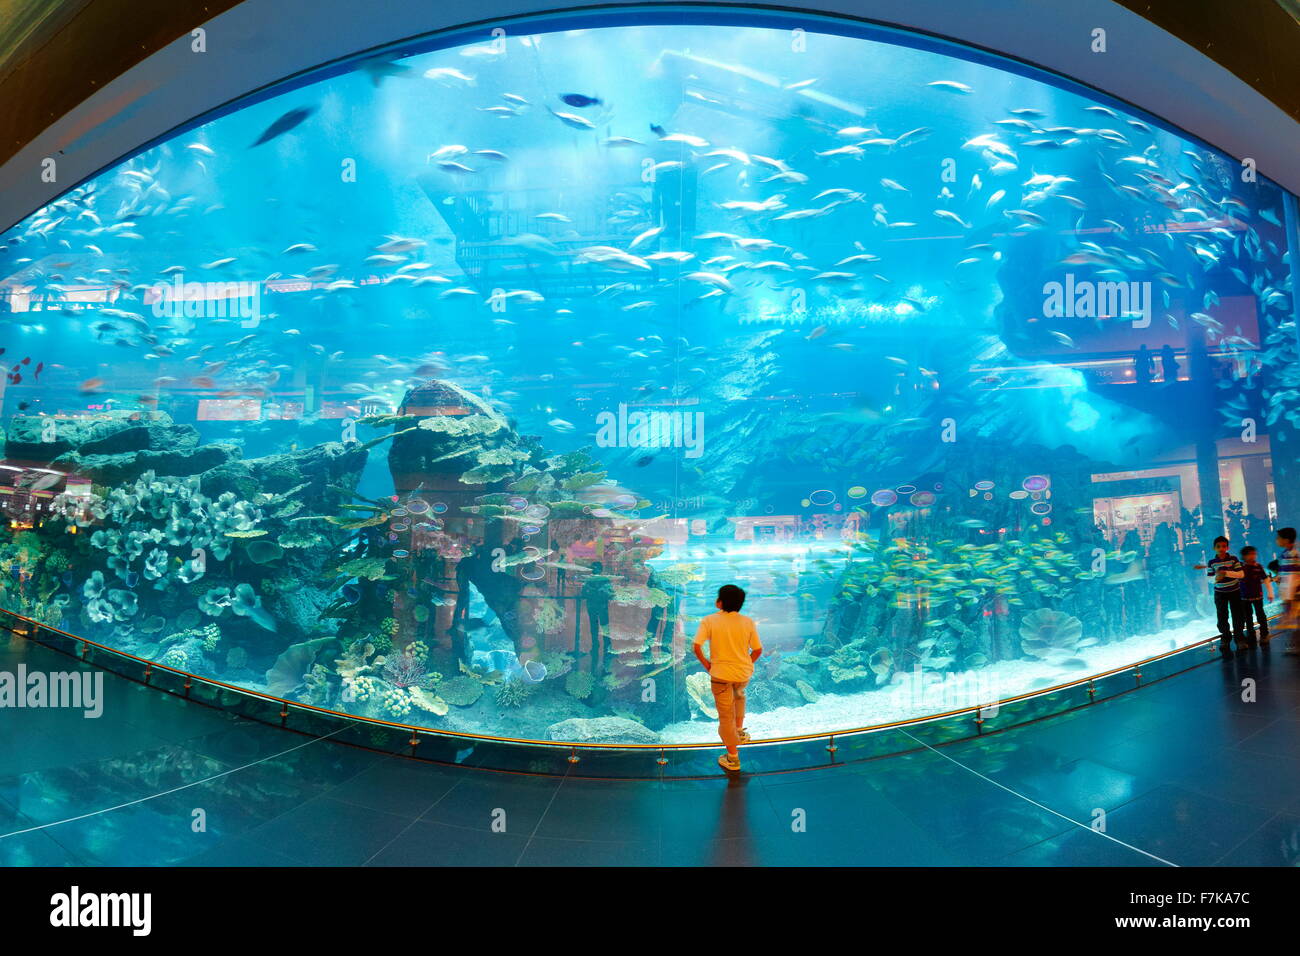 The Dubai Mall Aquarium, Dubai, United Arab Emirates, Middle East Stock Photo